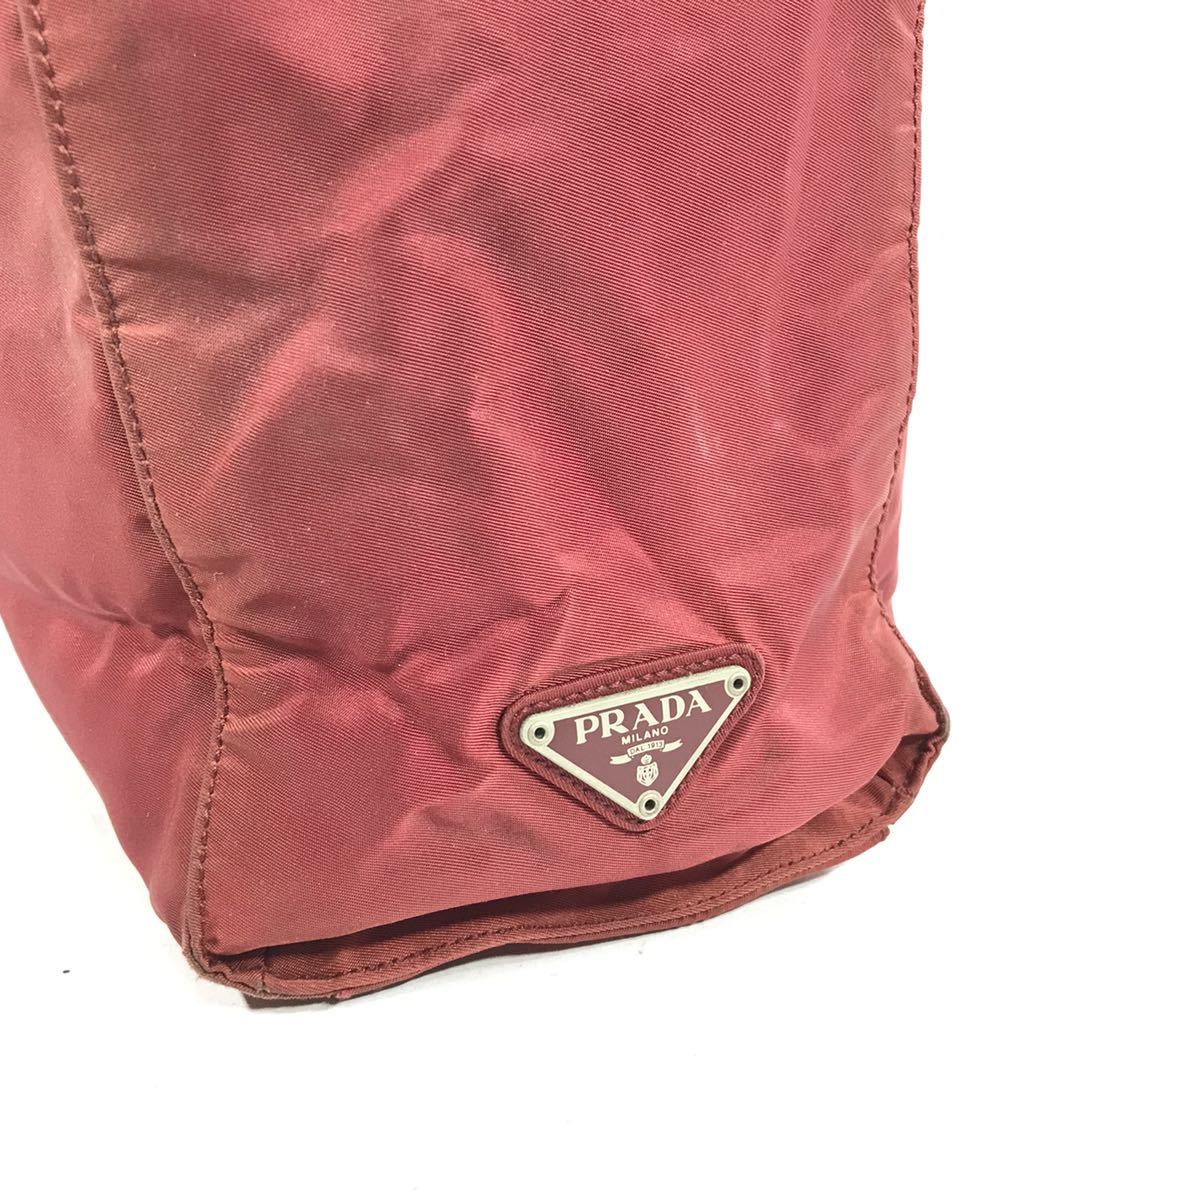 【プラダ】本物 PRADA ビジネスバッグ 三角ロゴプレート 赤 トートバッグ ハンドバッグ 書類かばん ナイロン メンズ レディース イタリア製_画像2